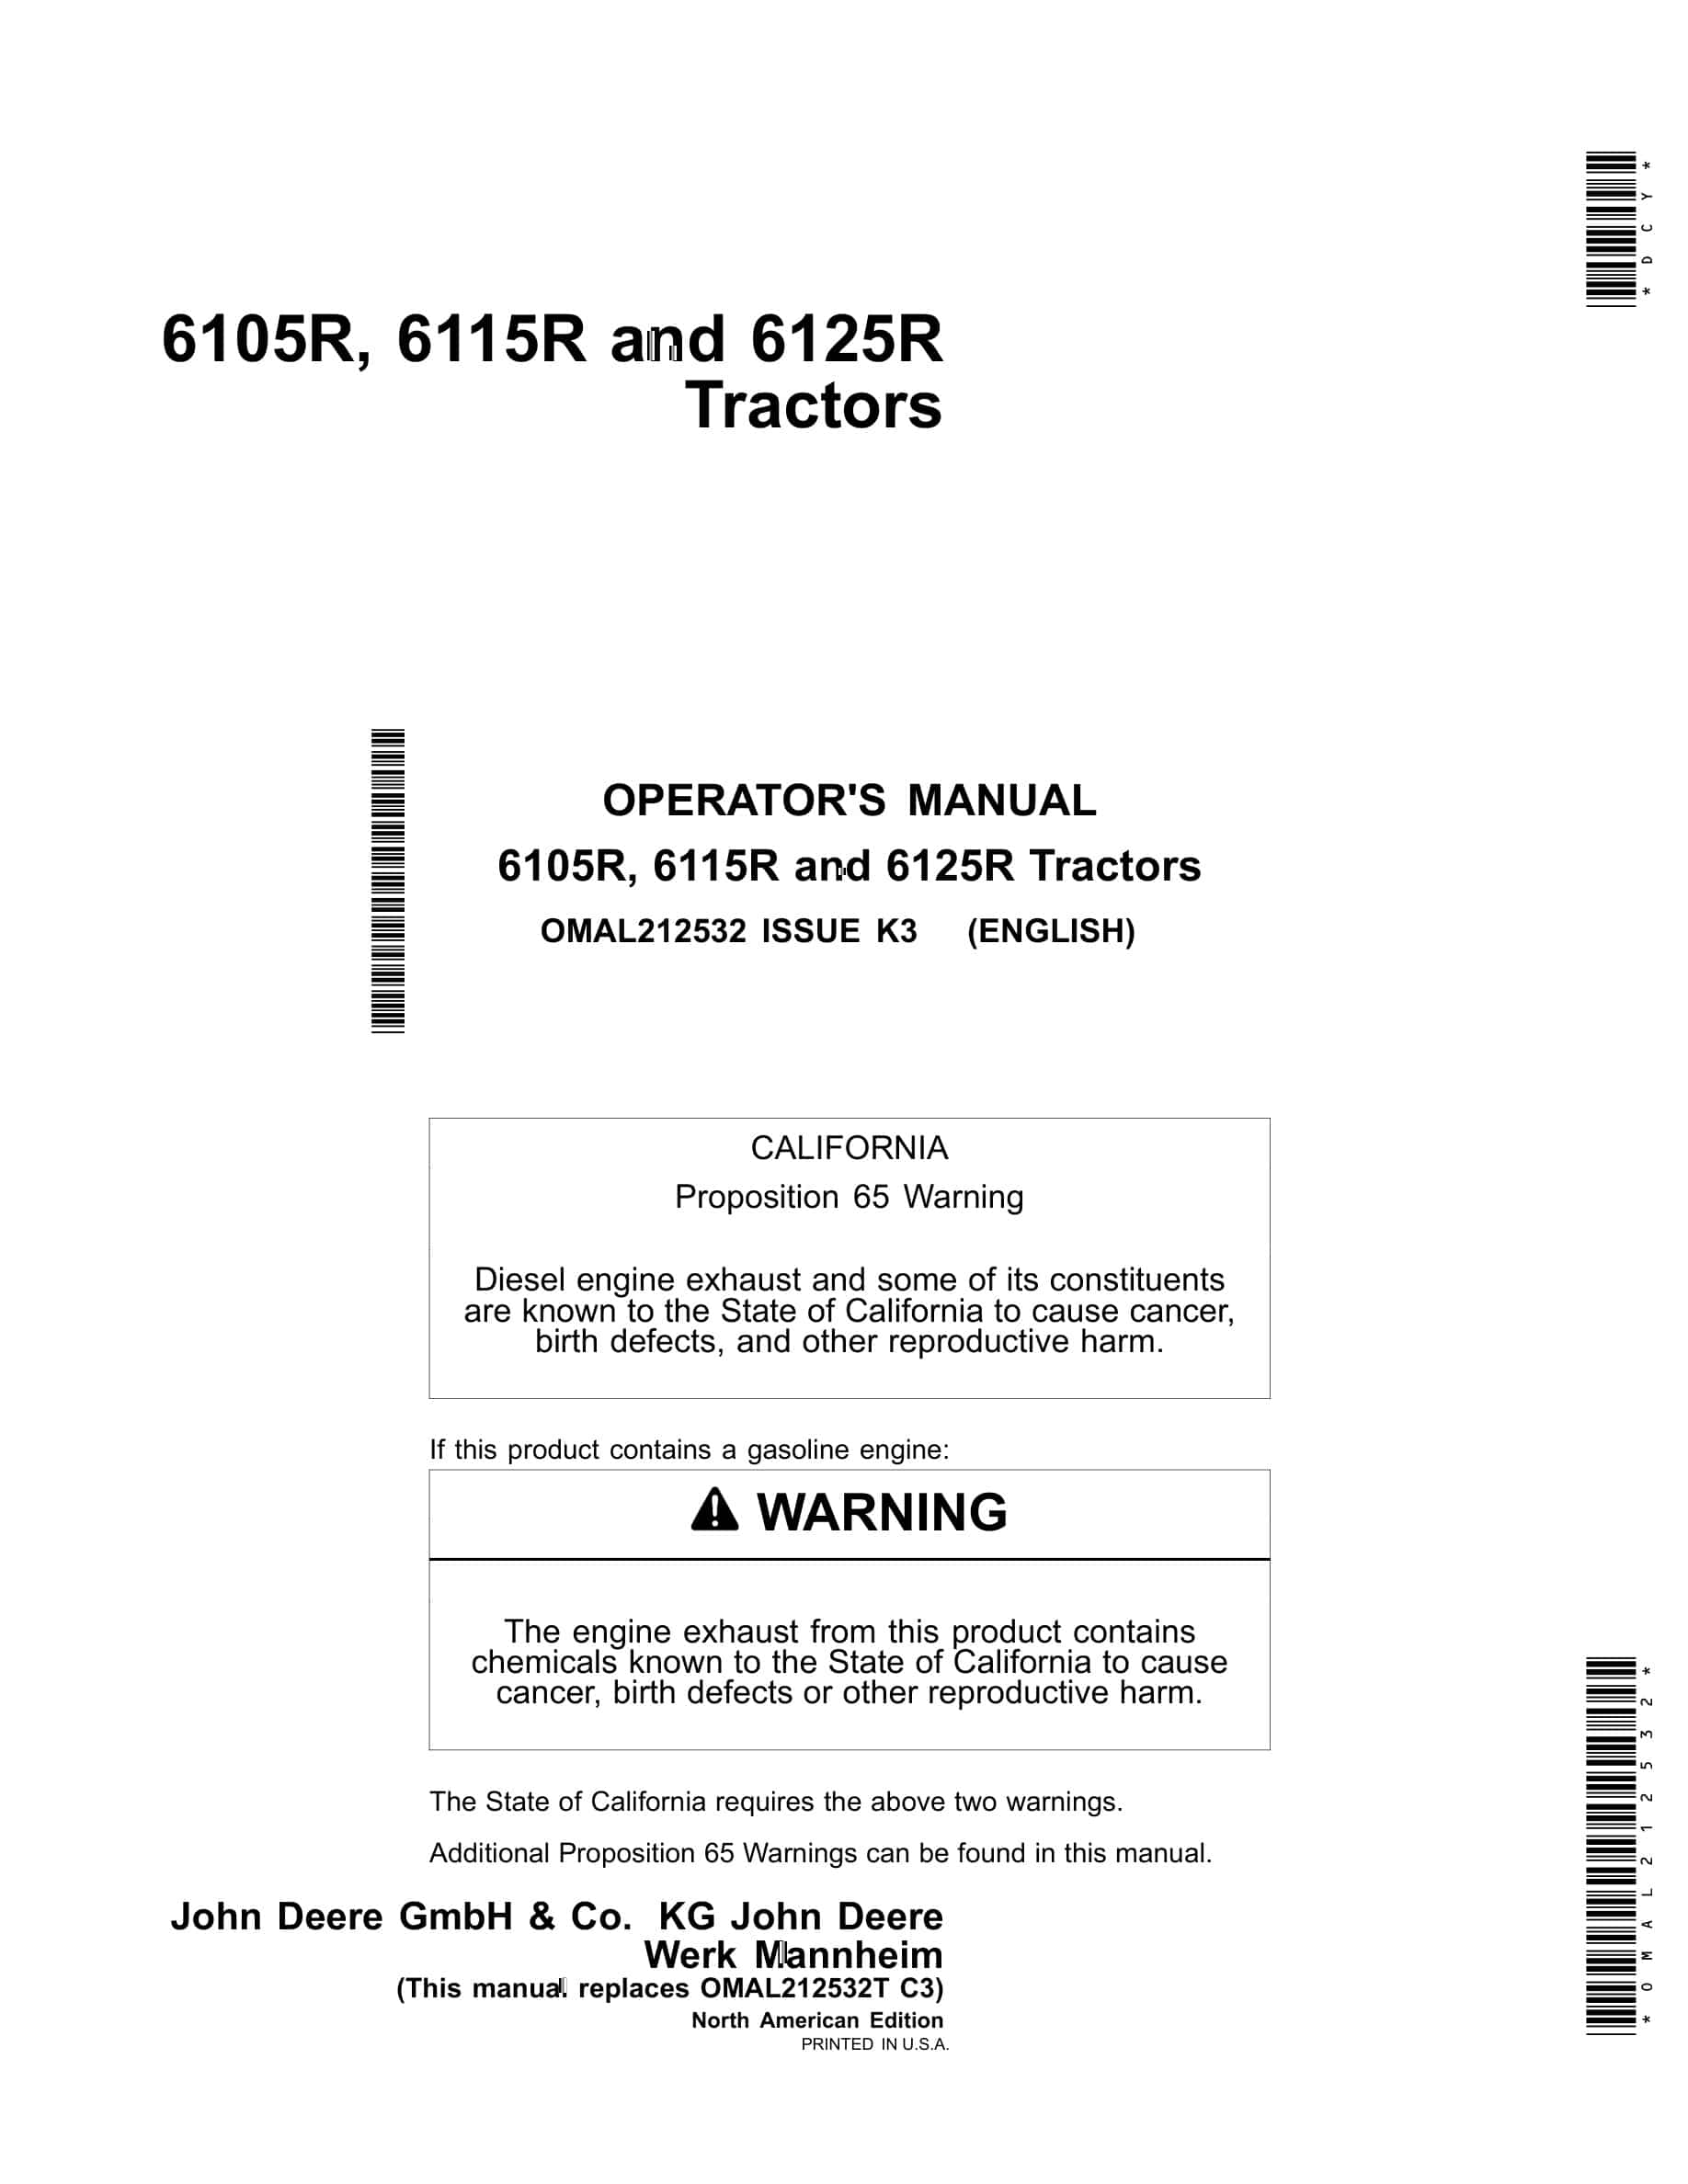 John Deere 6105R, 6115R and 6125R Tractor Operator Manual OMAL212532-1